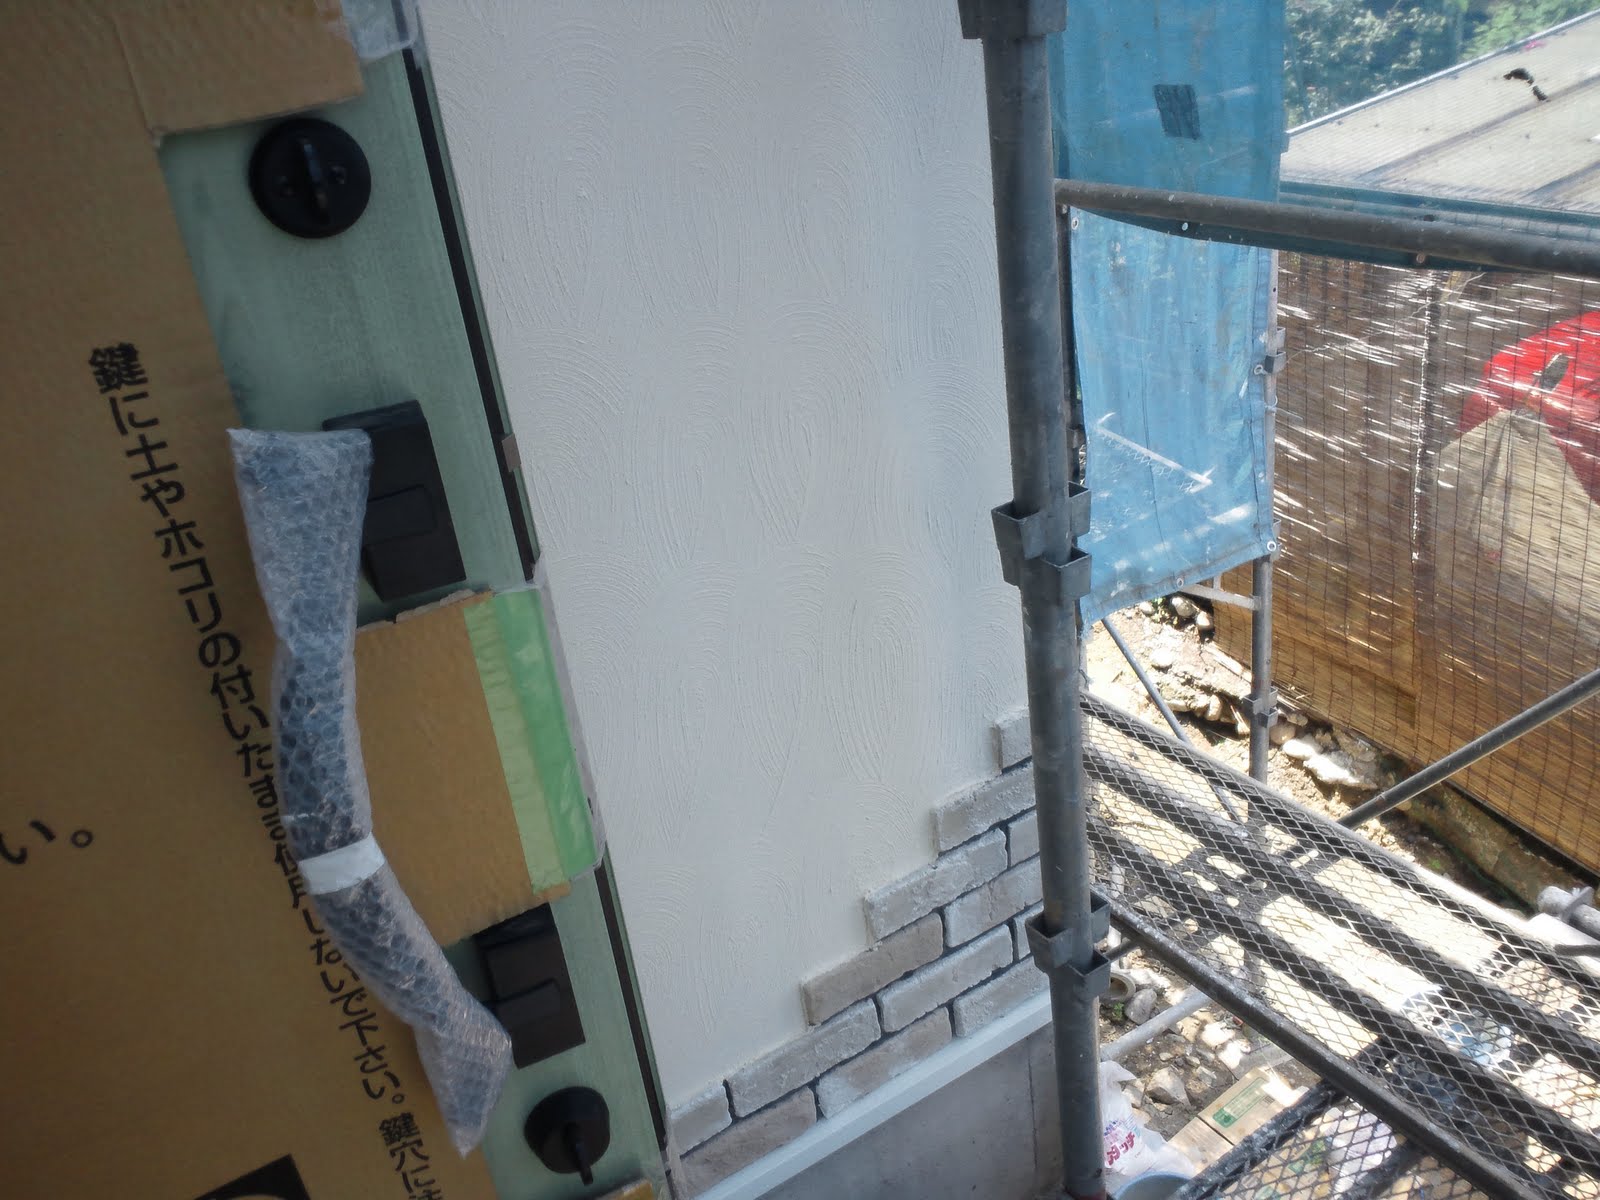 住宅建築着工95日目 上棟8週間後 外壁のリップル仕上げの完了 石膏ボードのパテ埋め 注文住宅が建つまで